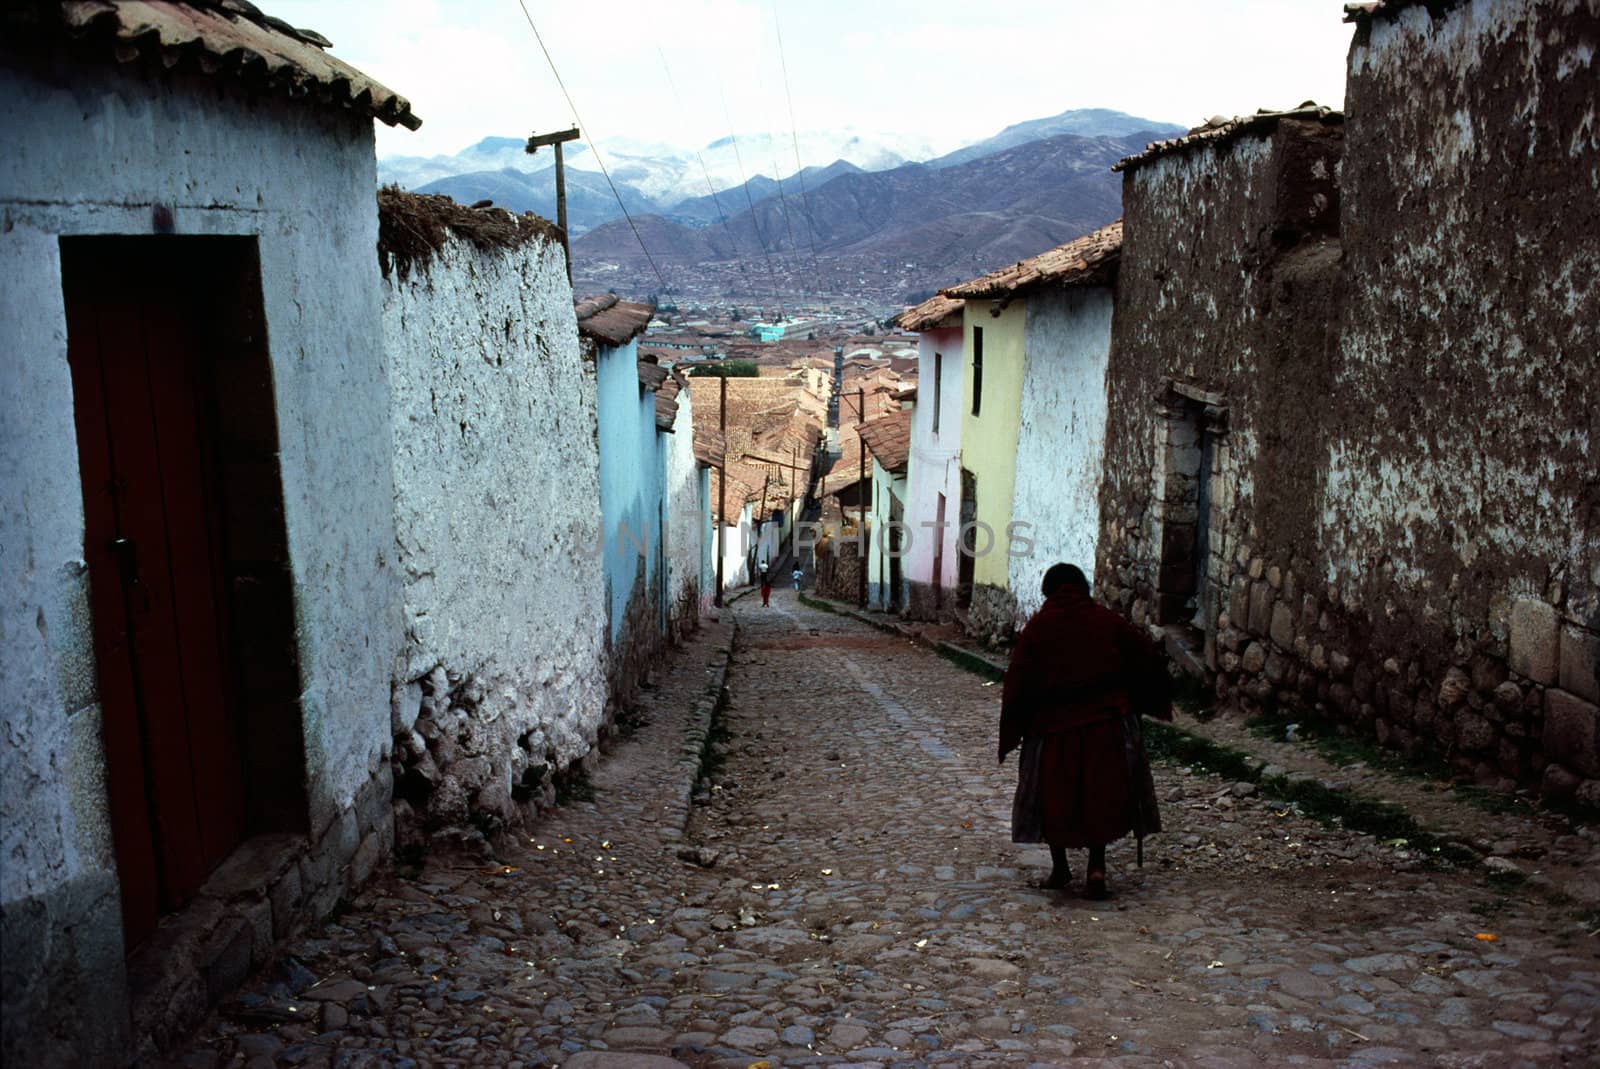 Street in Cuzco, Peru